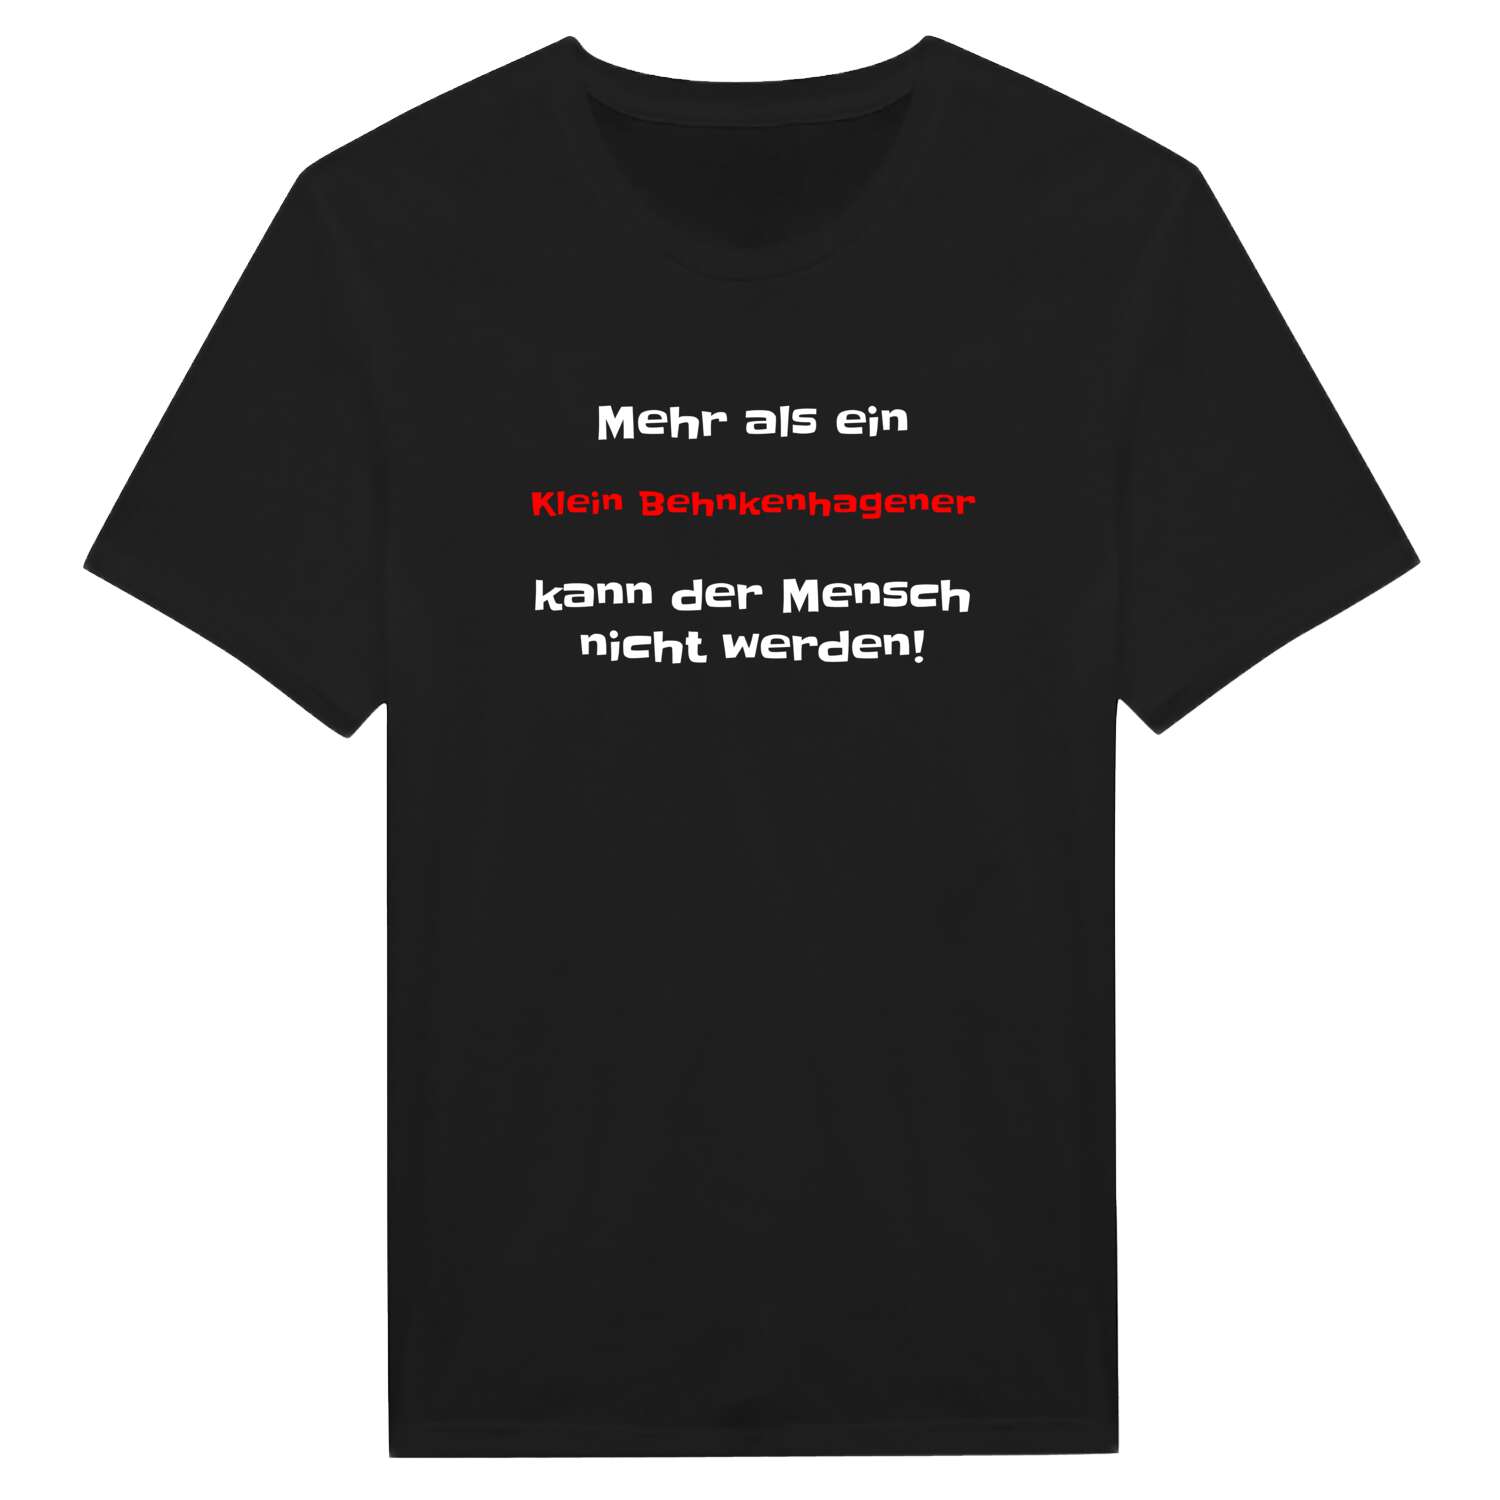 Klein Behnkenhagen T-Shirt »Mehr als ein«